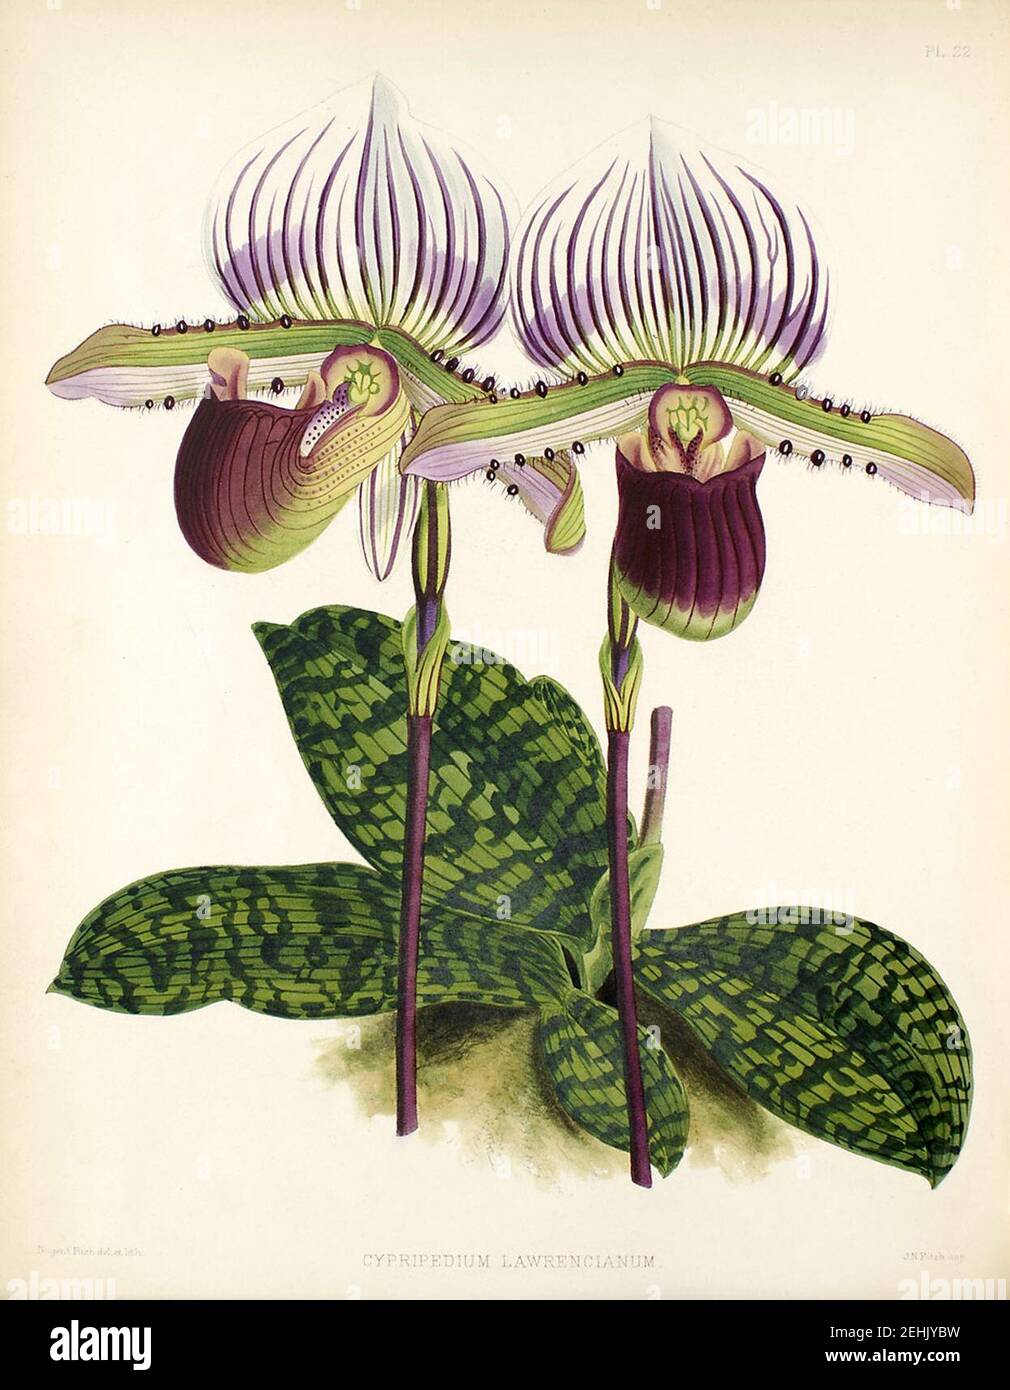 Paphiopedilum lawrenceanum. Stock Photo